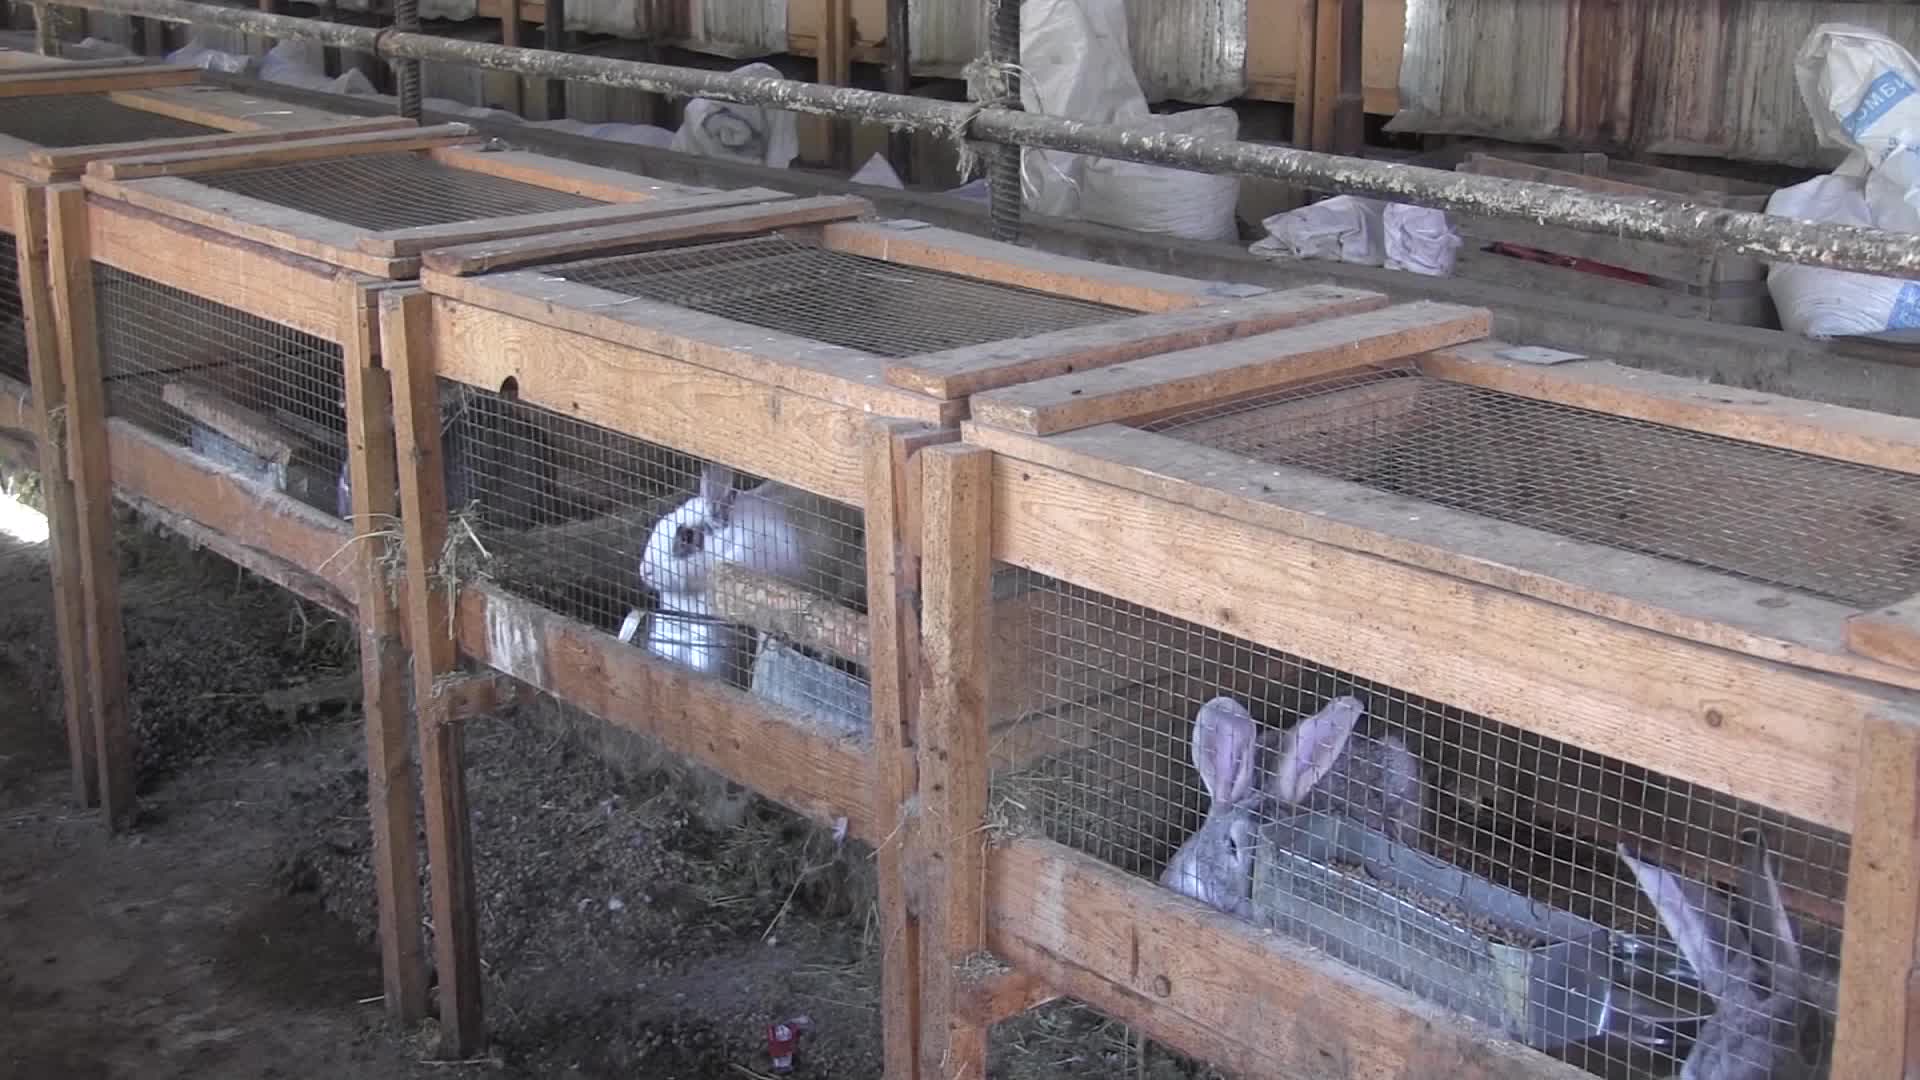 Разведение кроликов для начинающих — породы, уход, получение потомства. фото — ботаничка